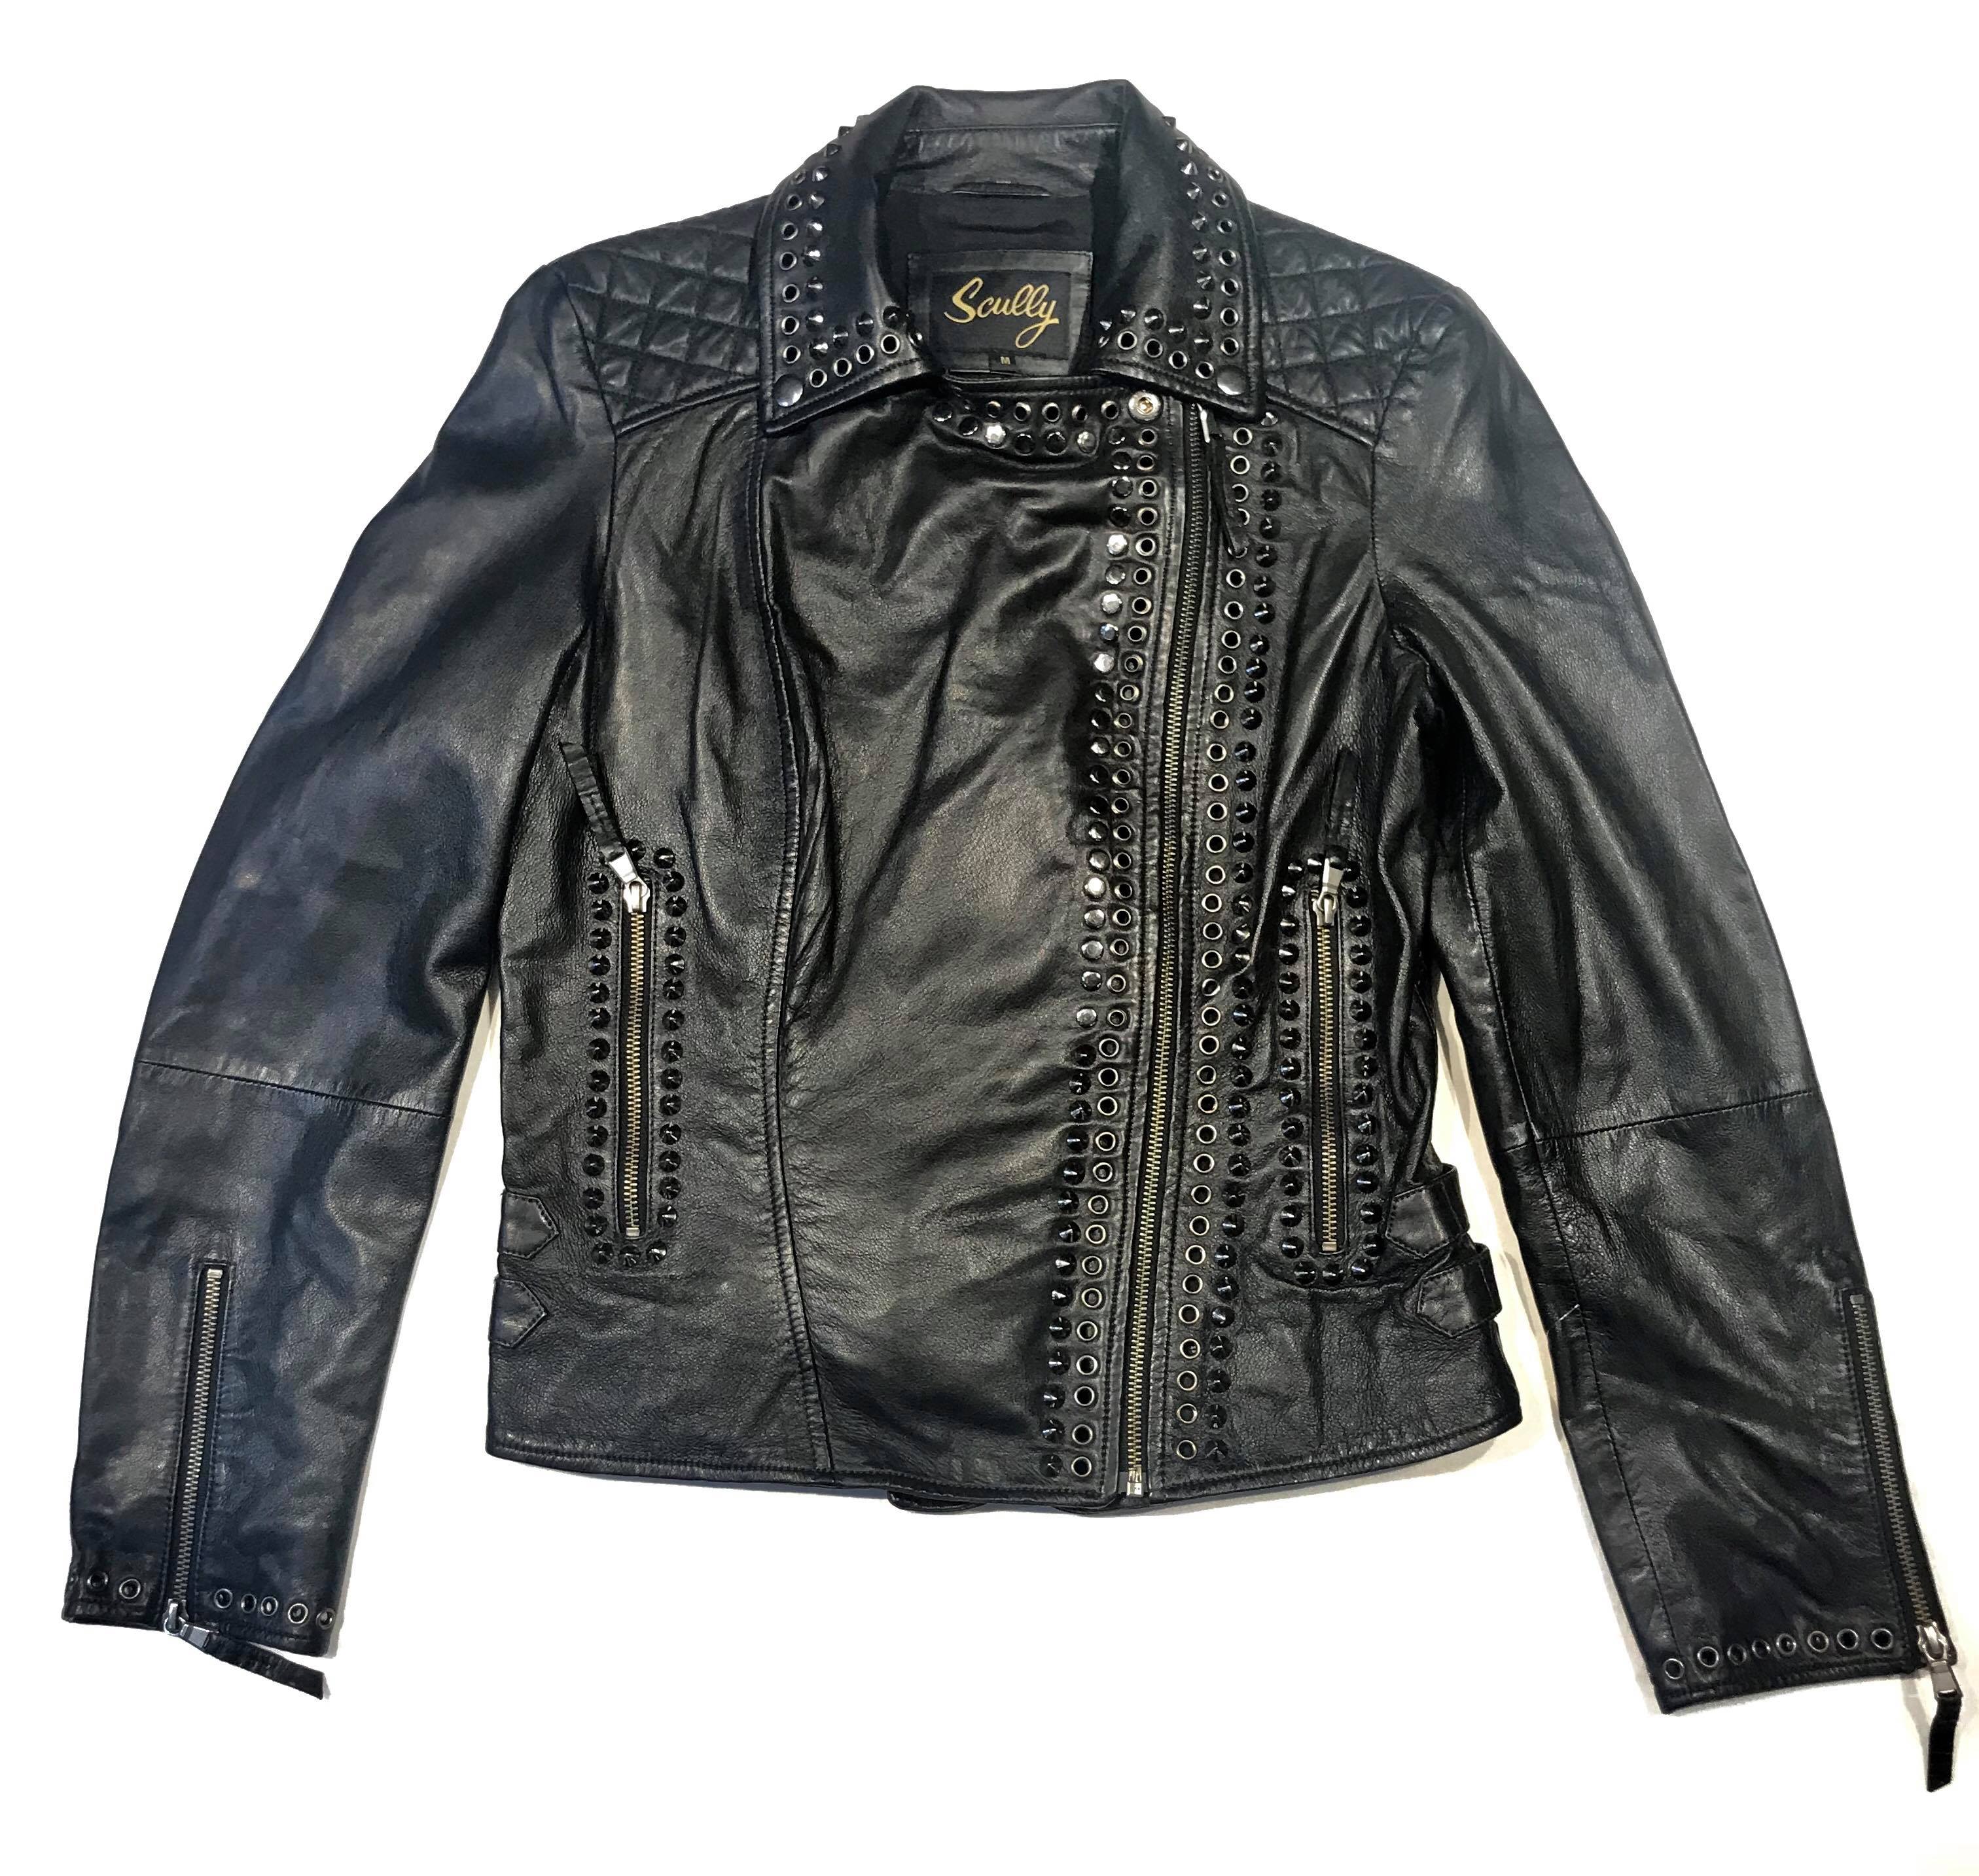 Black Leather Golden Spike Studded Punk Style Biker Jacket - Maker of Jacket